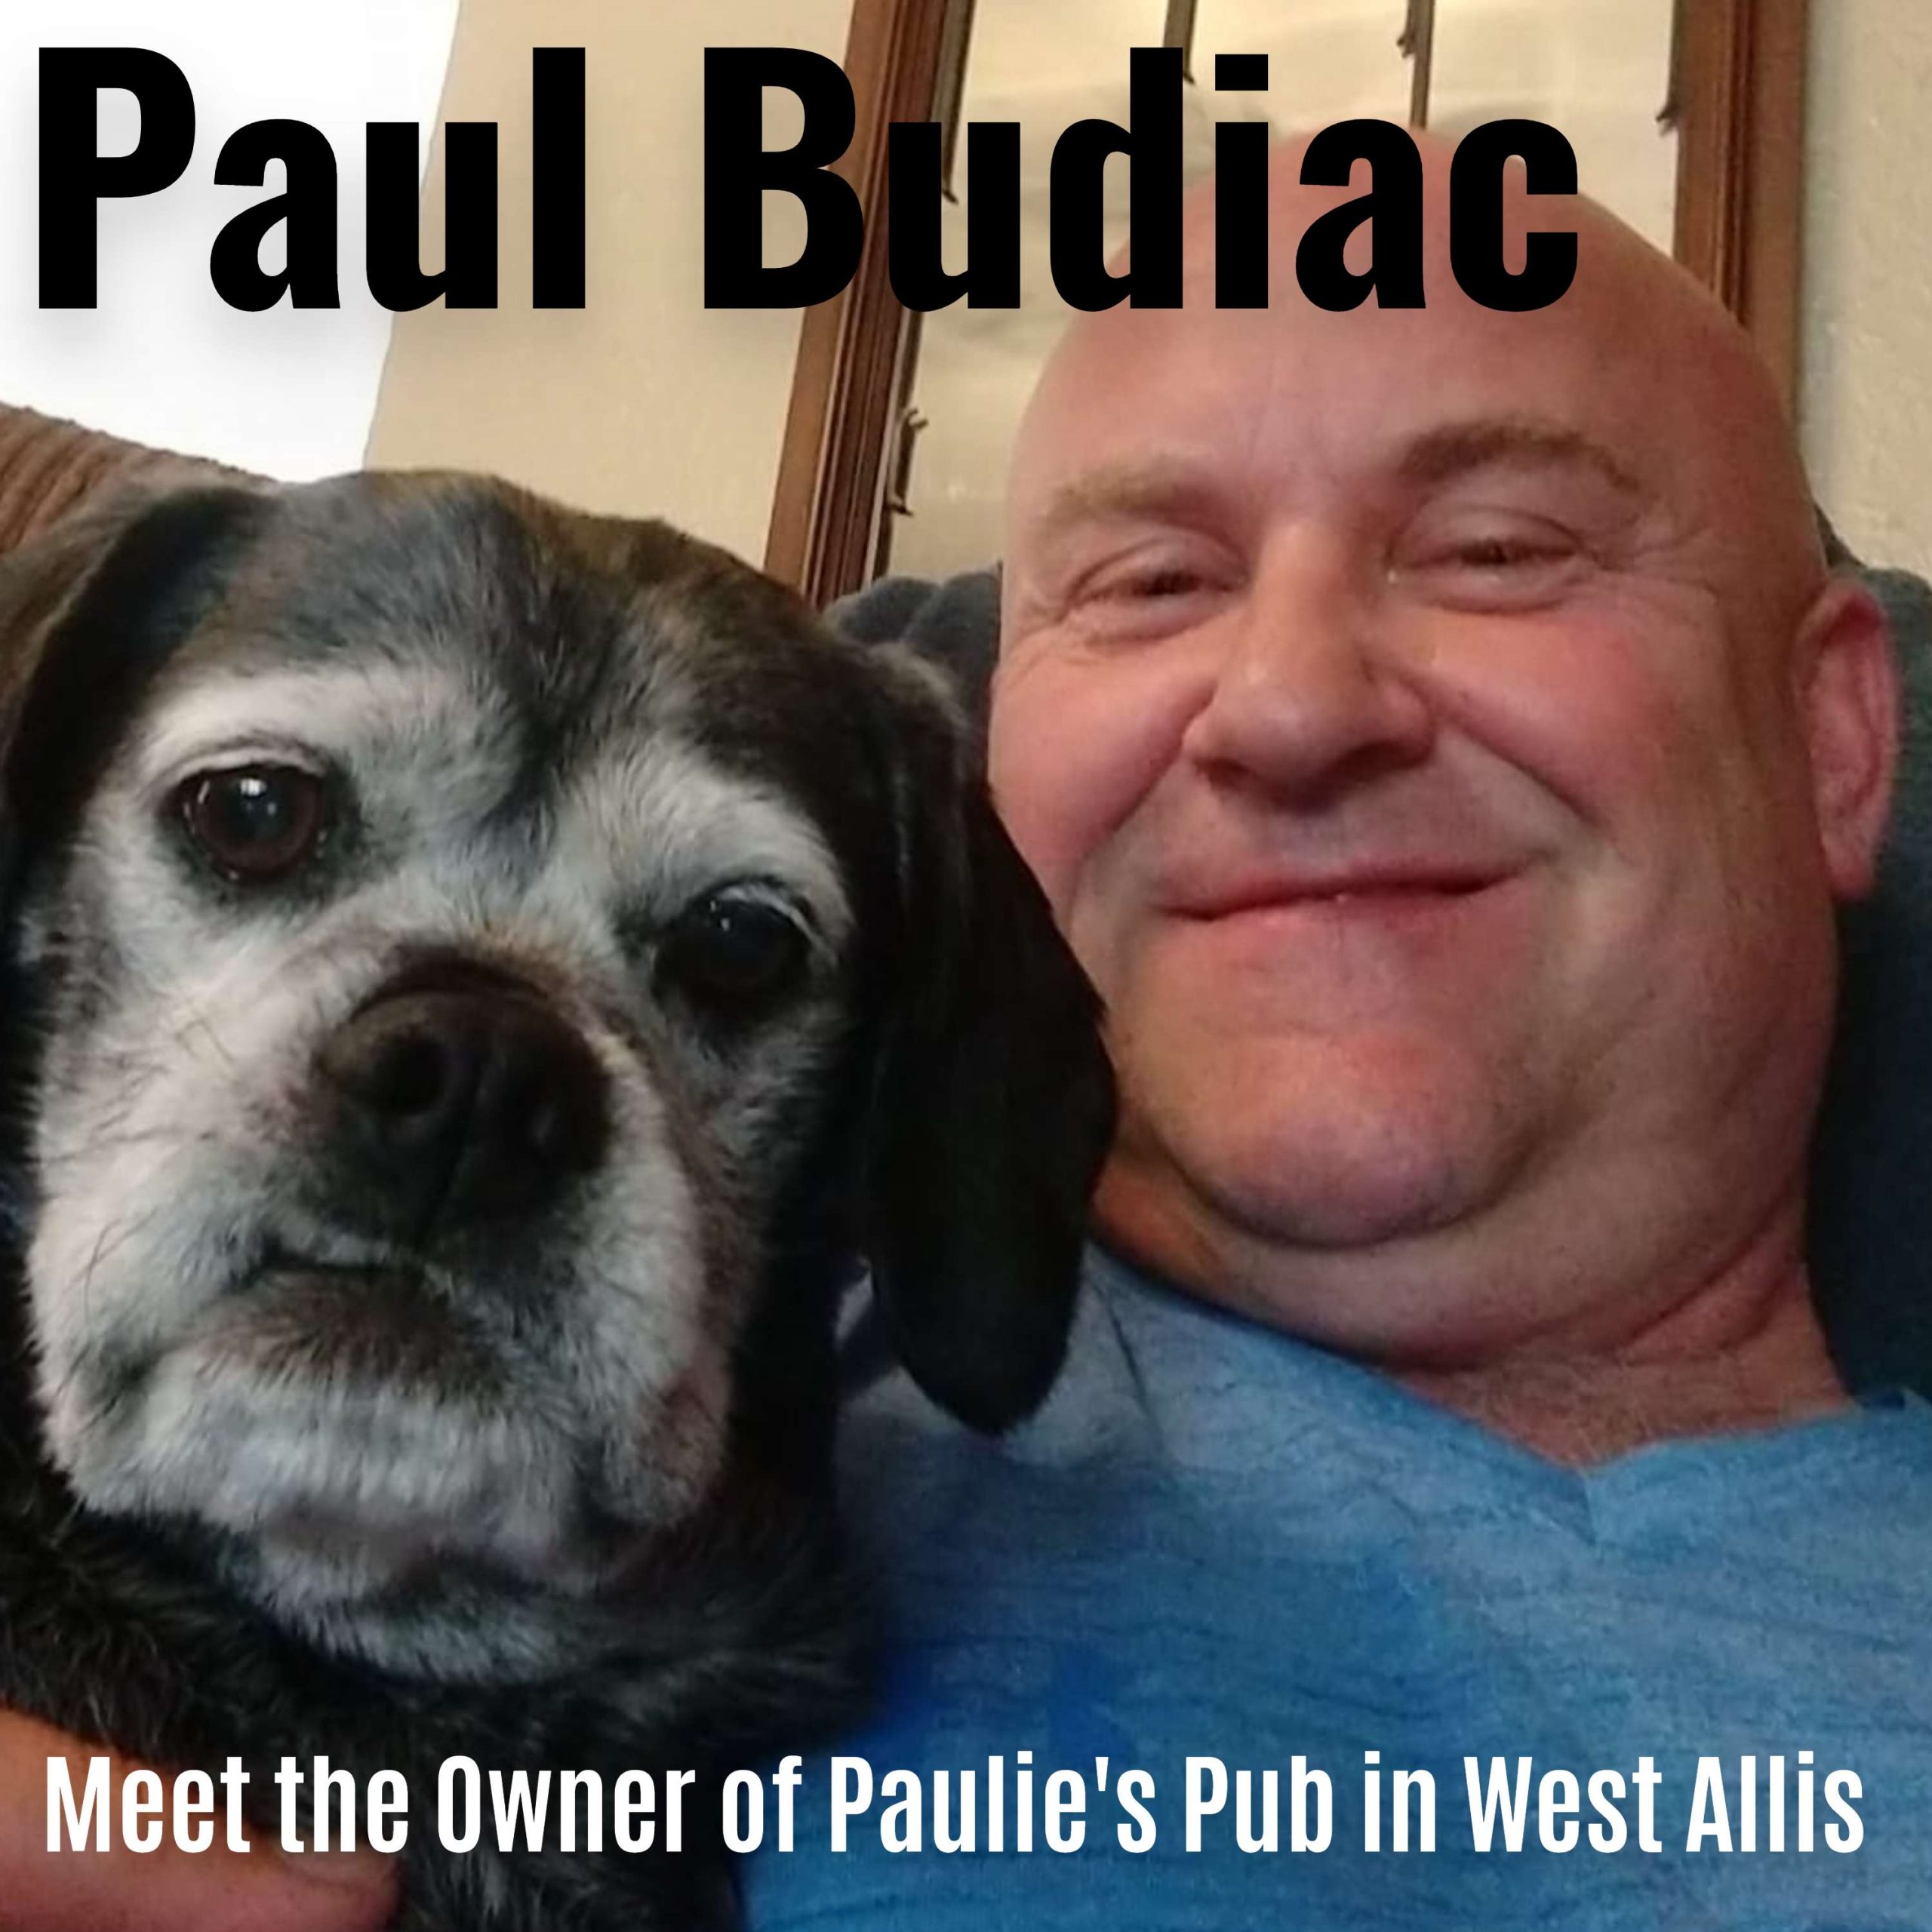 owner of Paulie's Pub & Eatery in West Allis, Paul Budiac